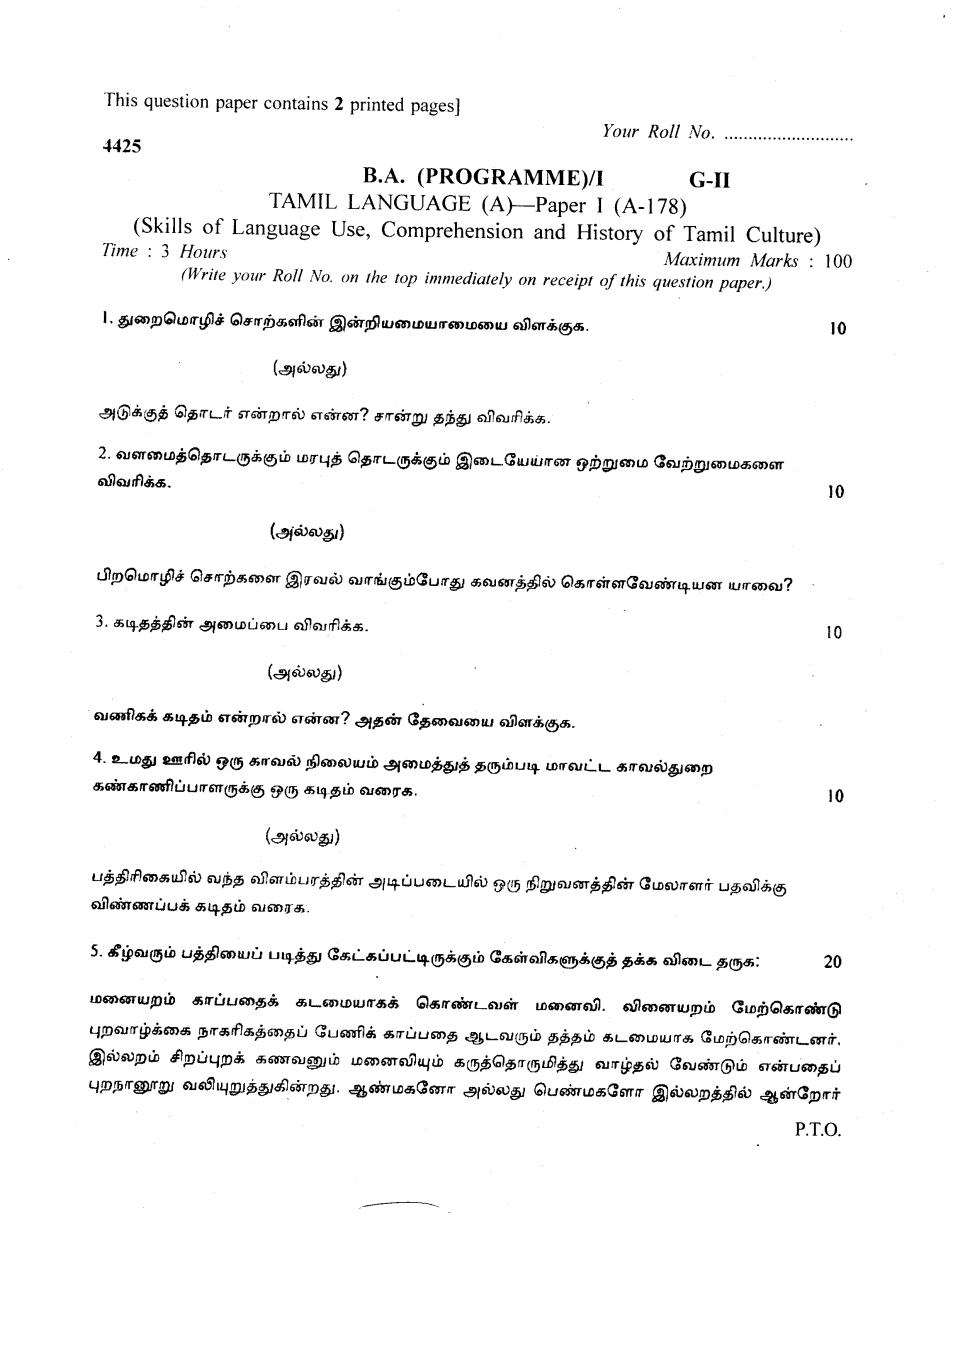 DU SOL Question Paper 2018 BA Tamil - Page 1